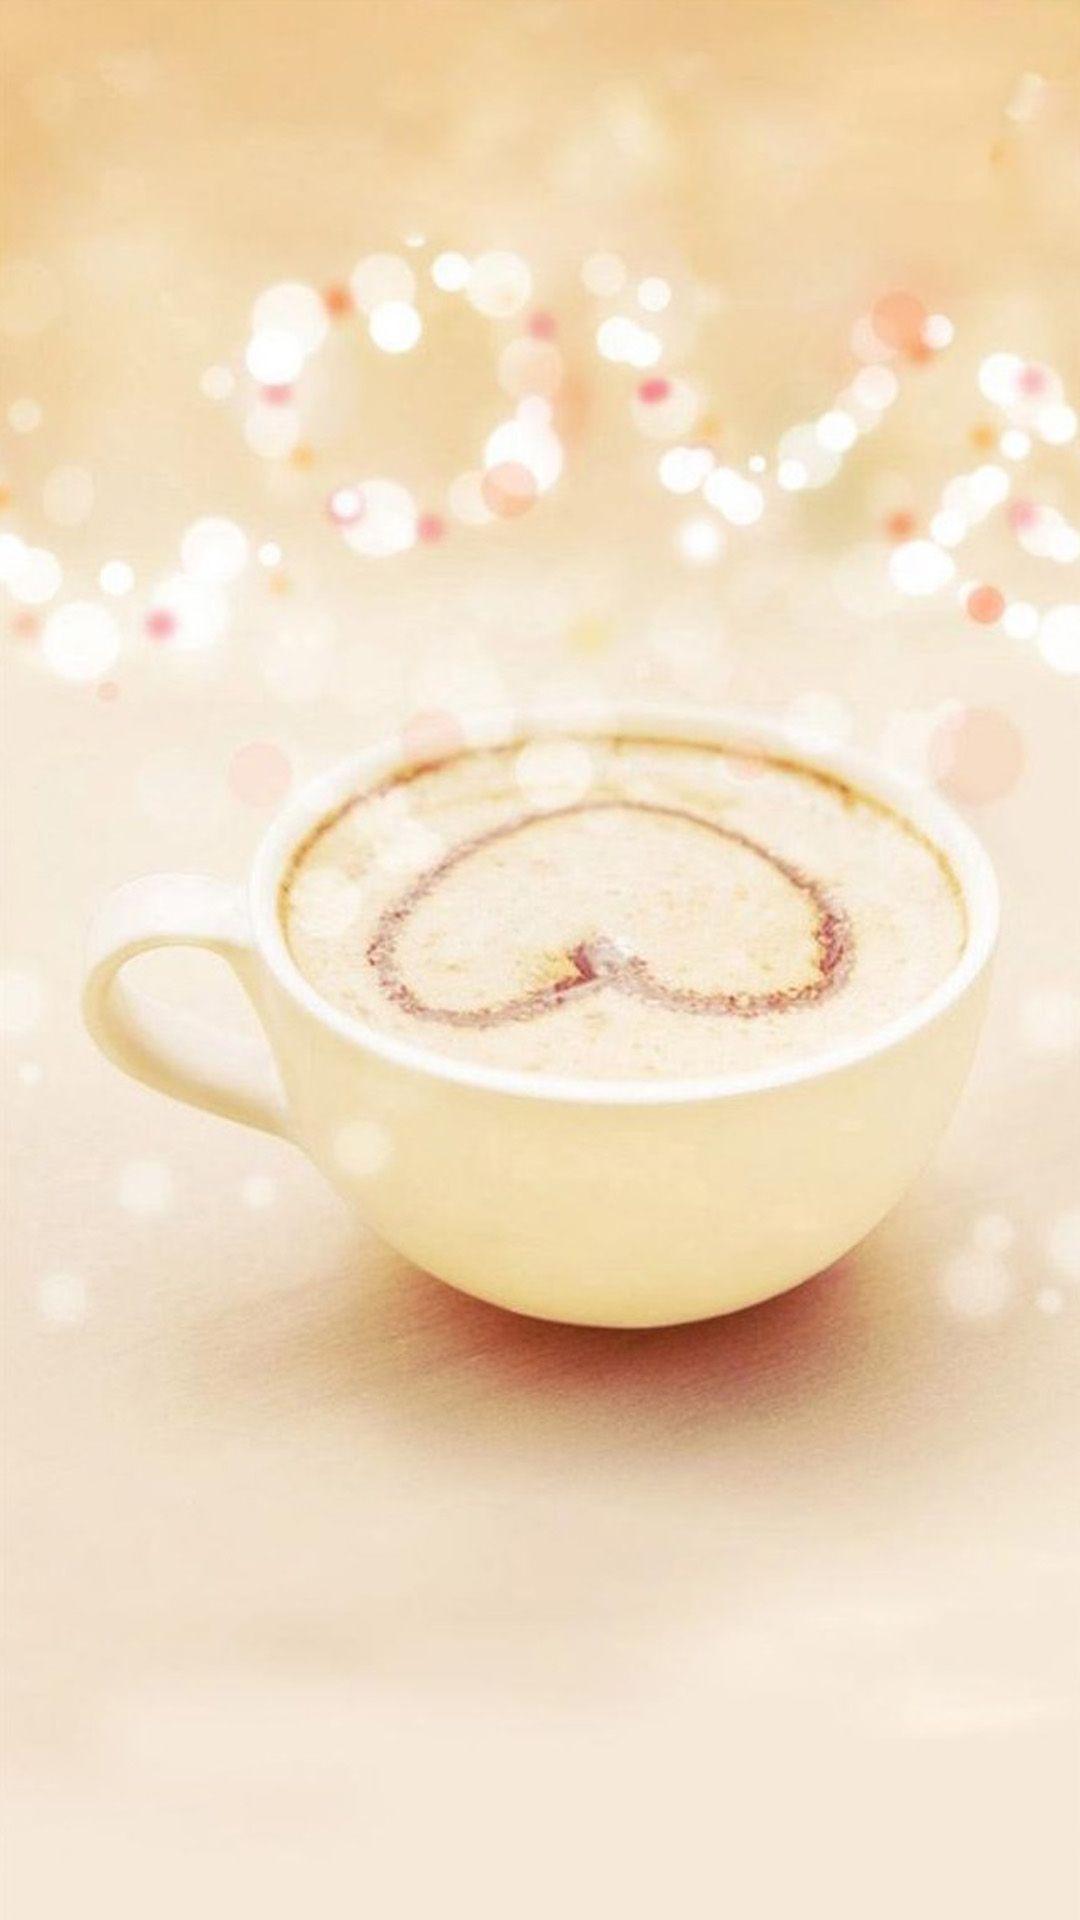 Heart latte art. A girly iPhone wallpaper. Autumn Equinox